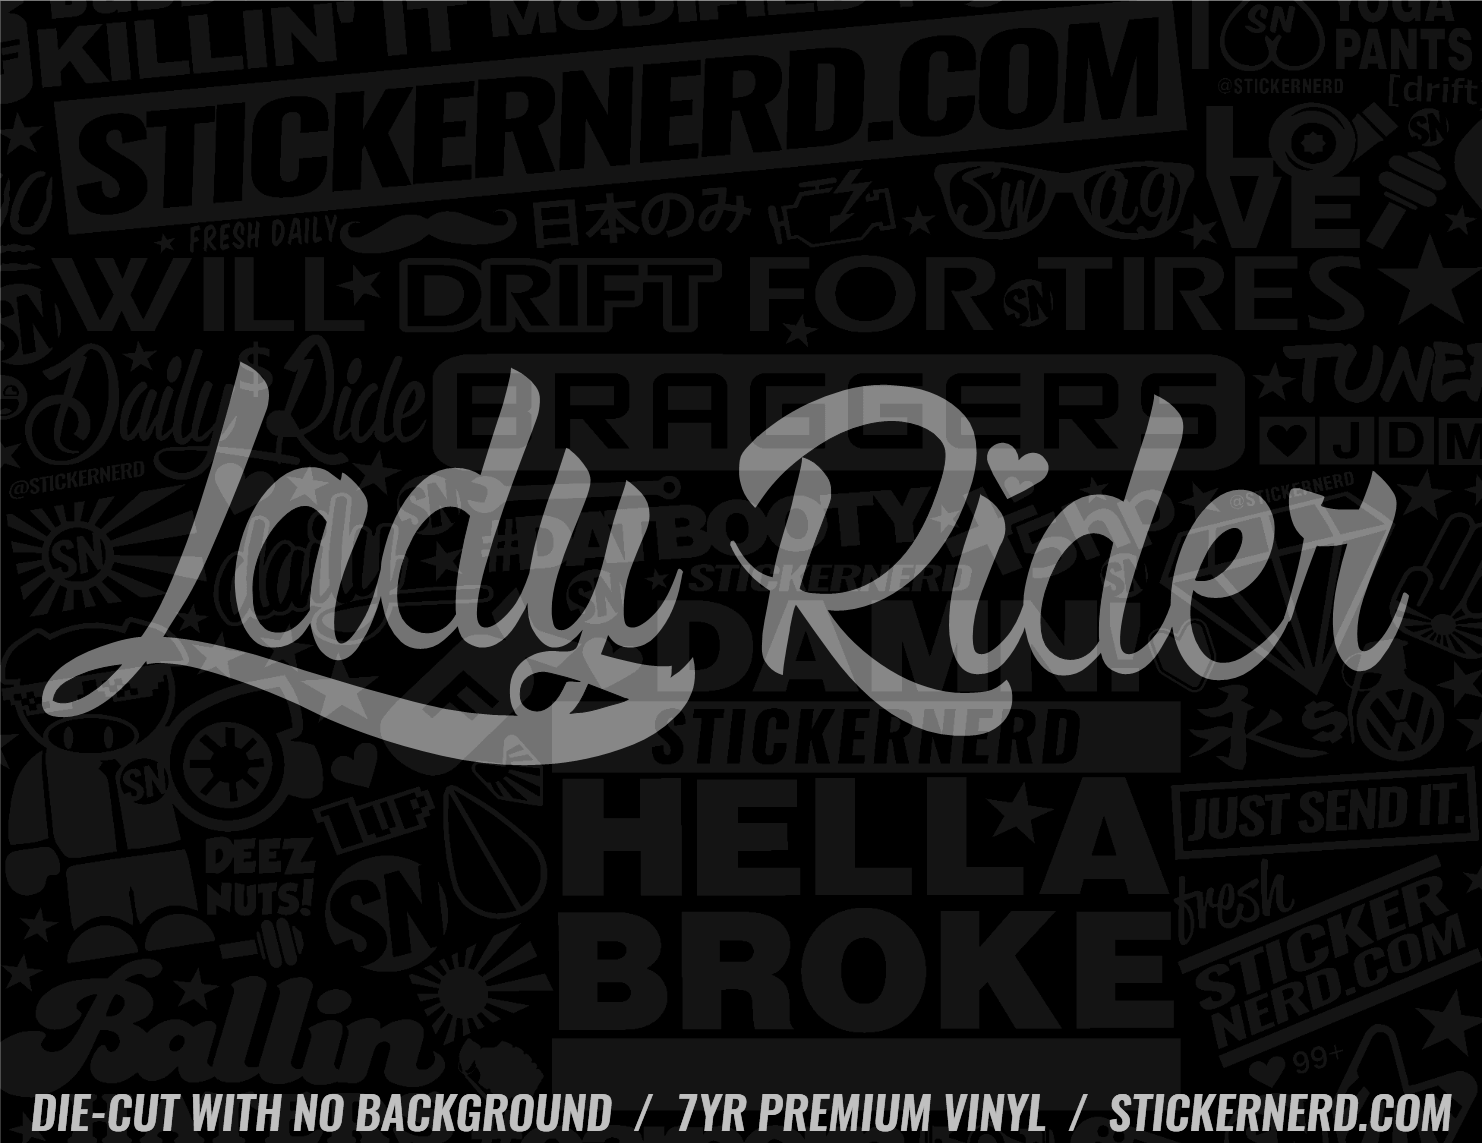 Lady Rider Sticker - Window Decal - STICKERNERD.COM